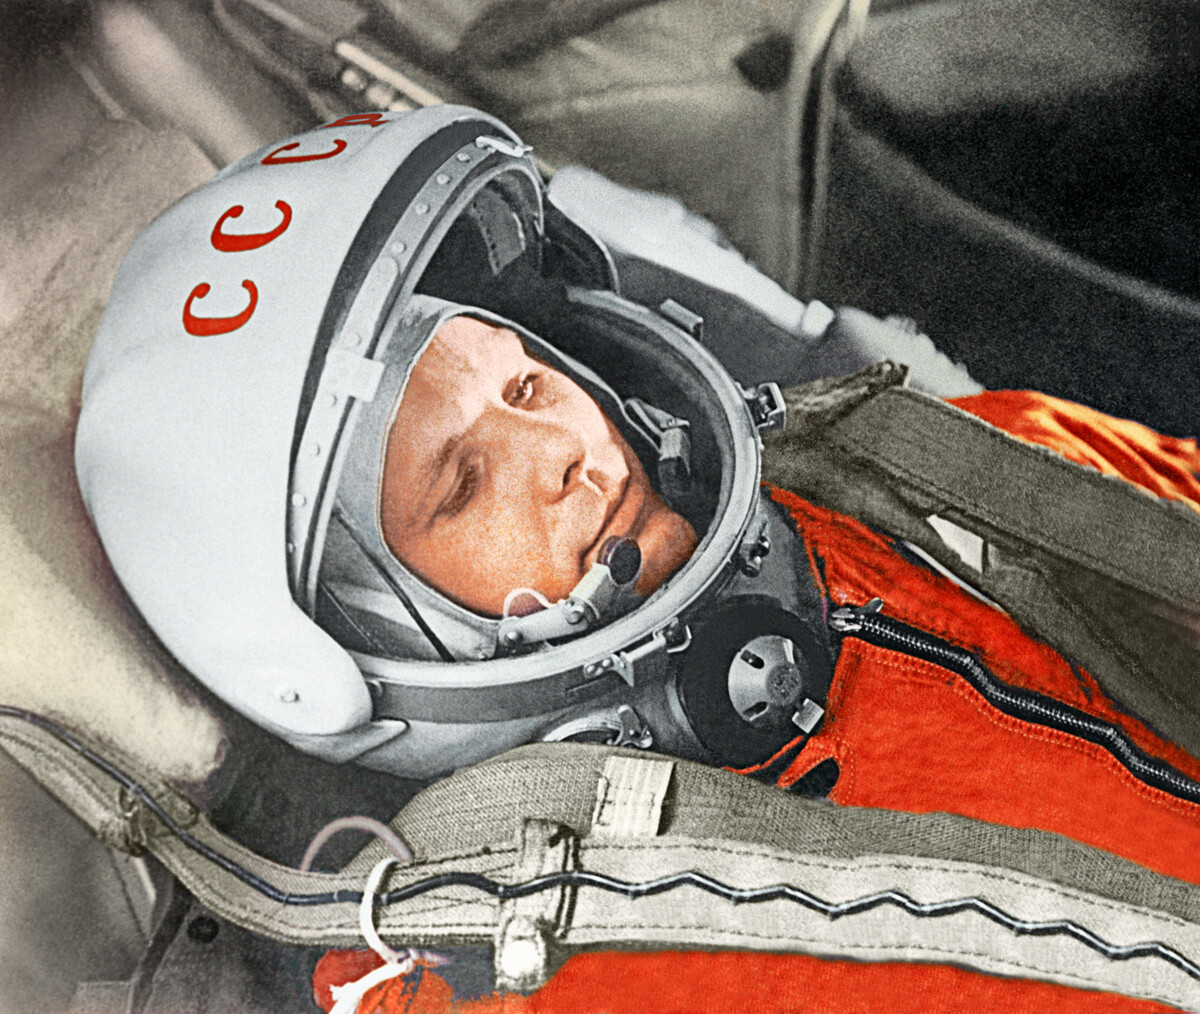 Yury Gagarin before his flight